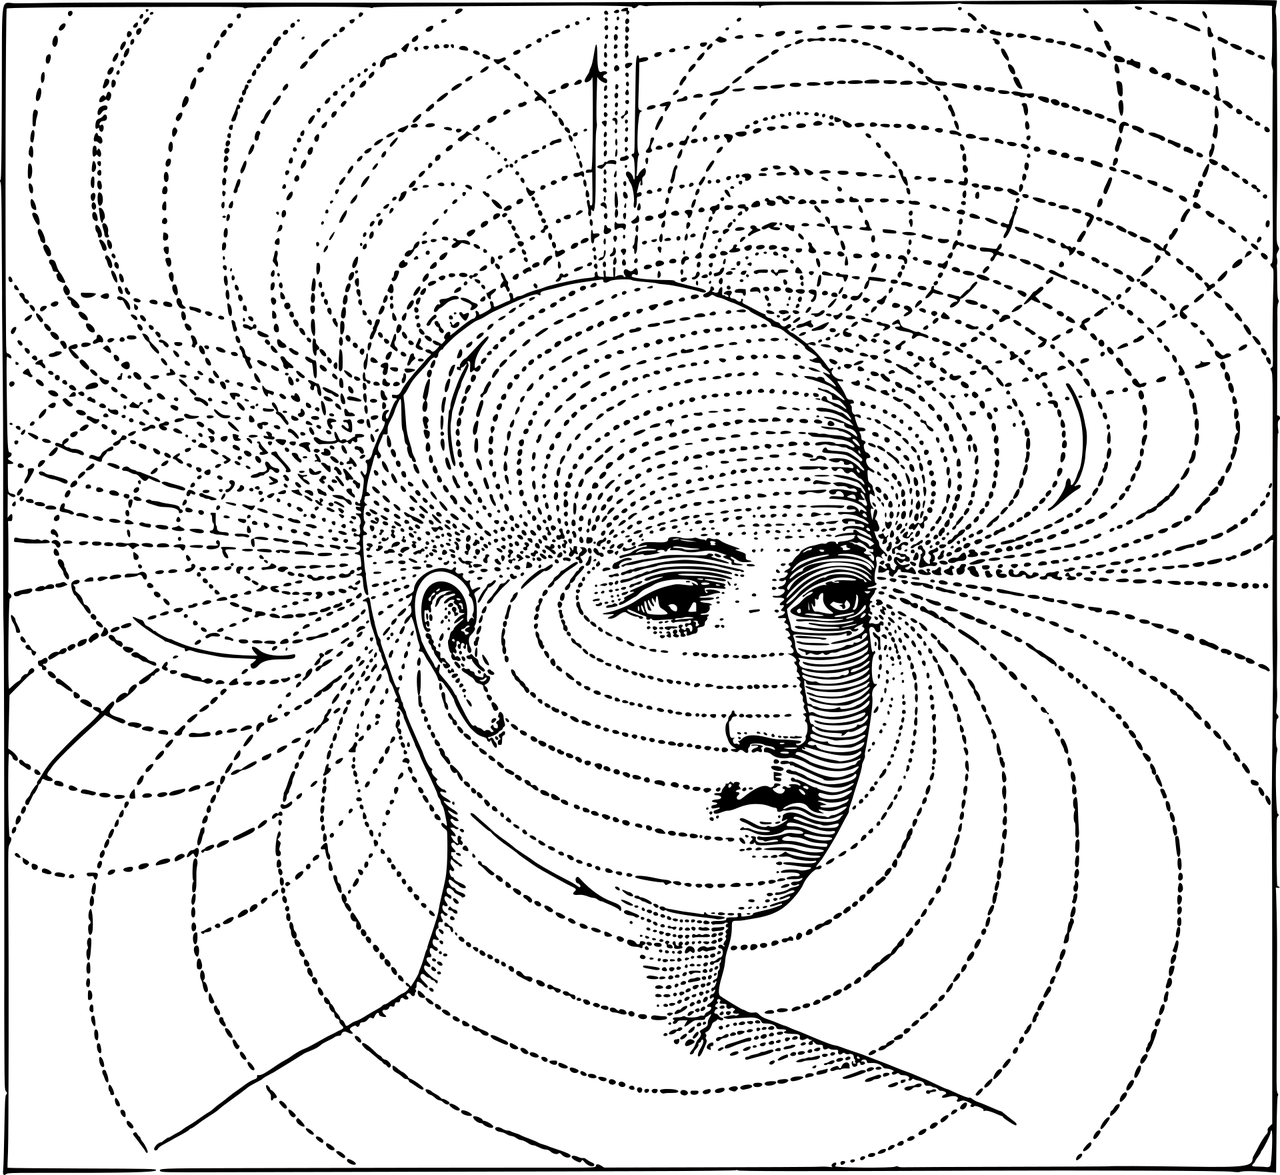 Ilustração mostrando um rosto humano e diversas linhas em formato elíptico, contornando a cabeça até se perderem no fundo da imagem